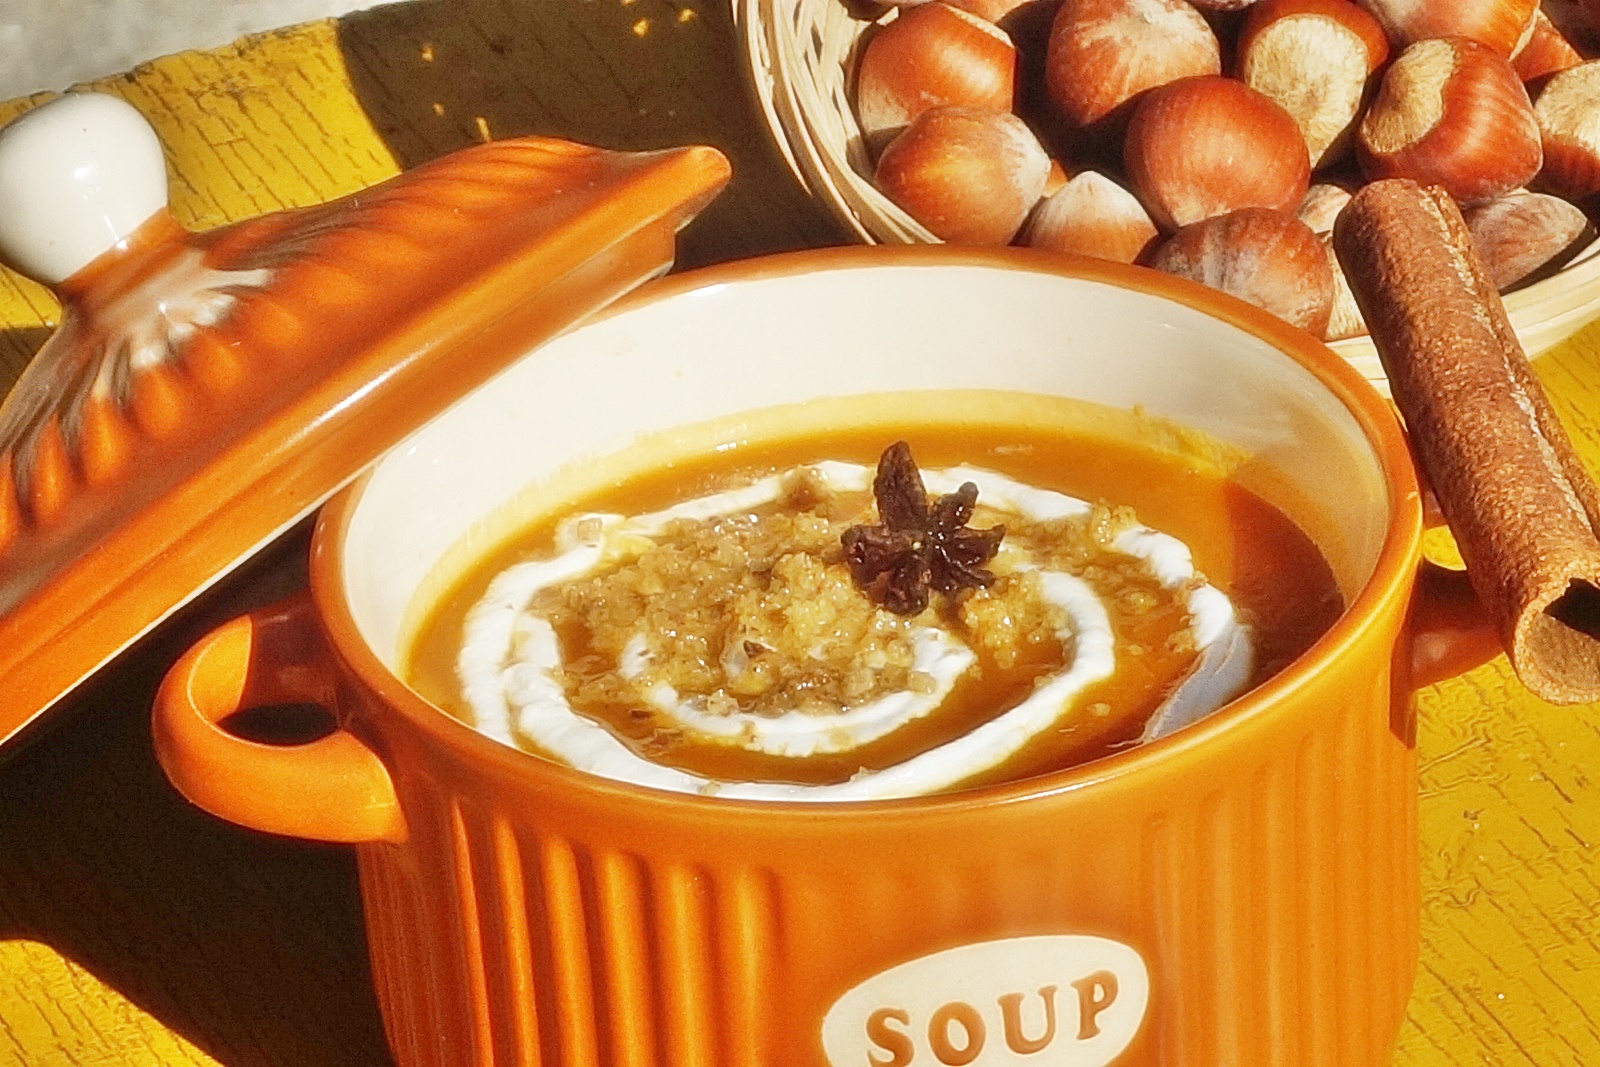 Supa crema orange mix cu alune de padure